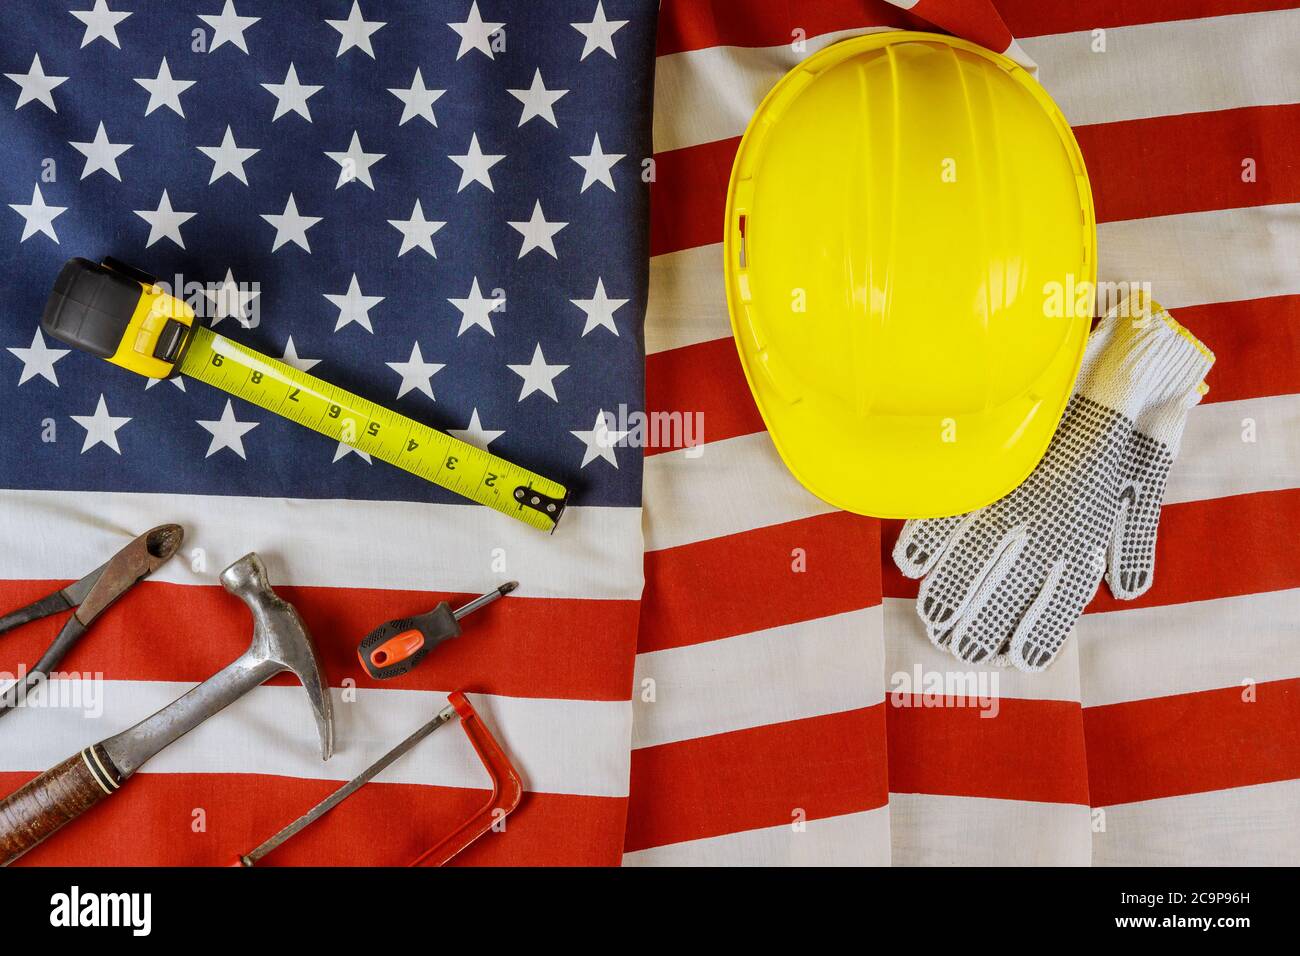 Patriotische amerikanische Flagge mit Sternen und Streifen im Labor Day verschiedene Werkzeuge Band messen auf USA Flagge Hintergrund Stockfoto